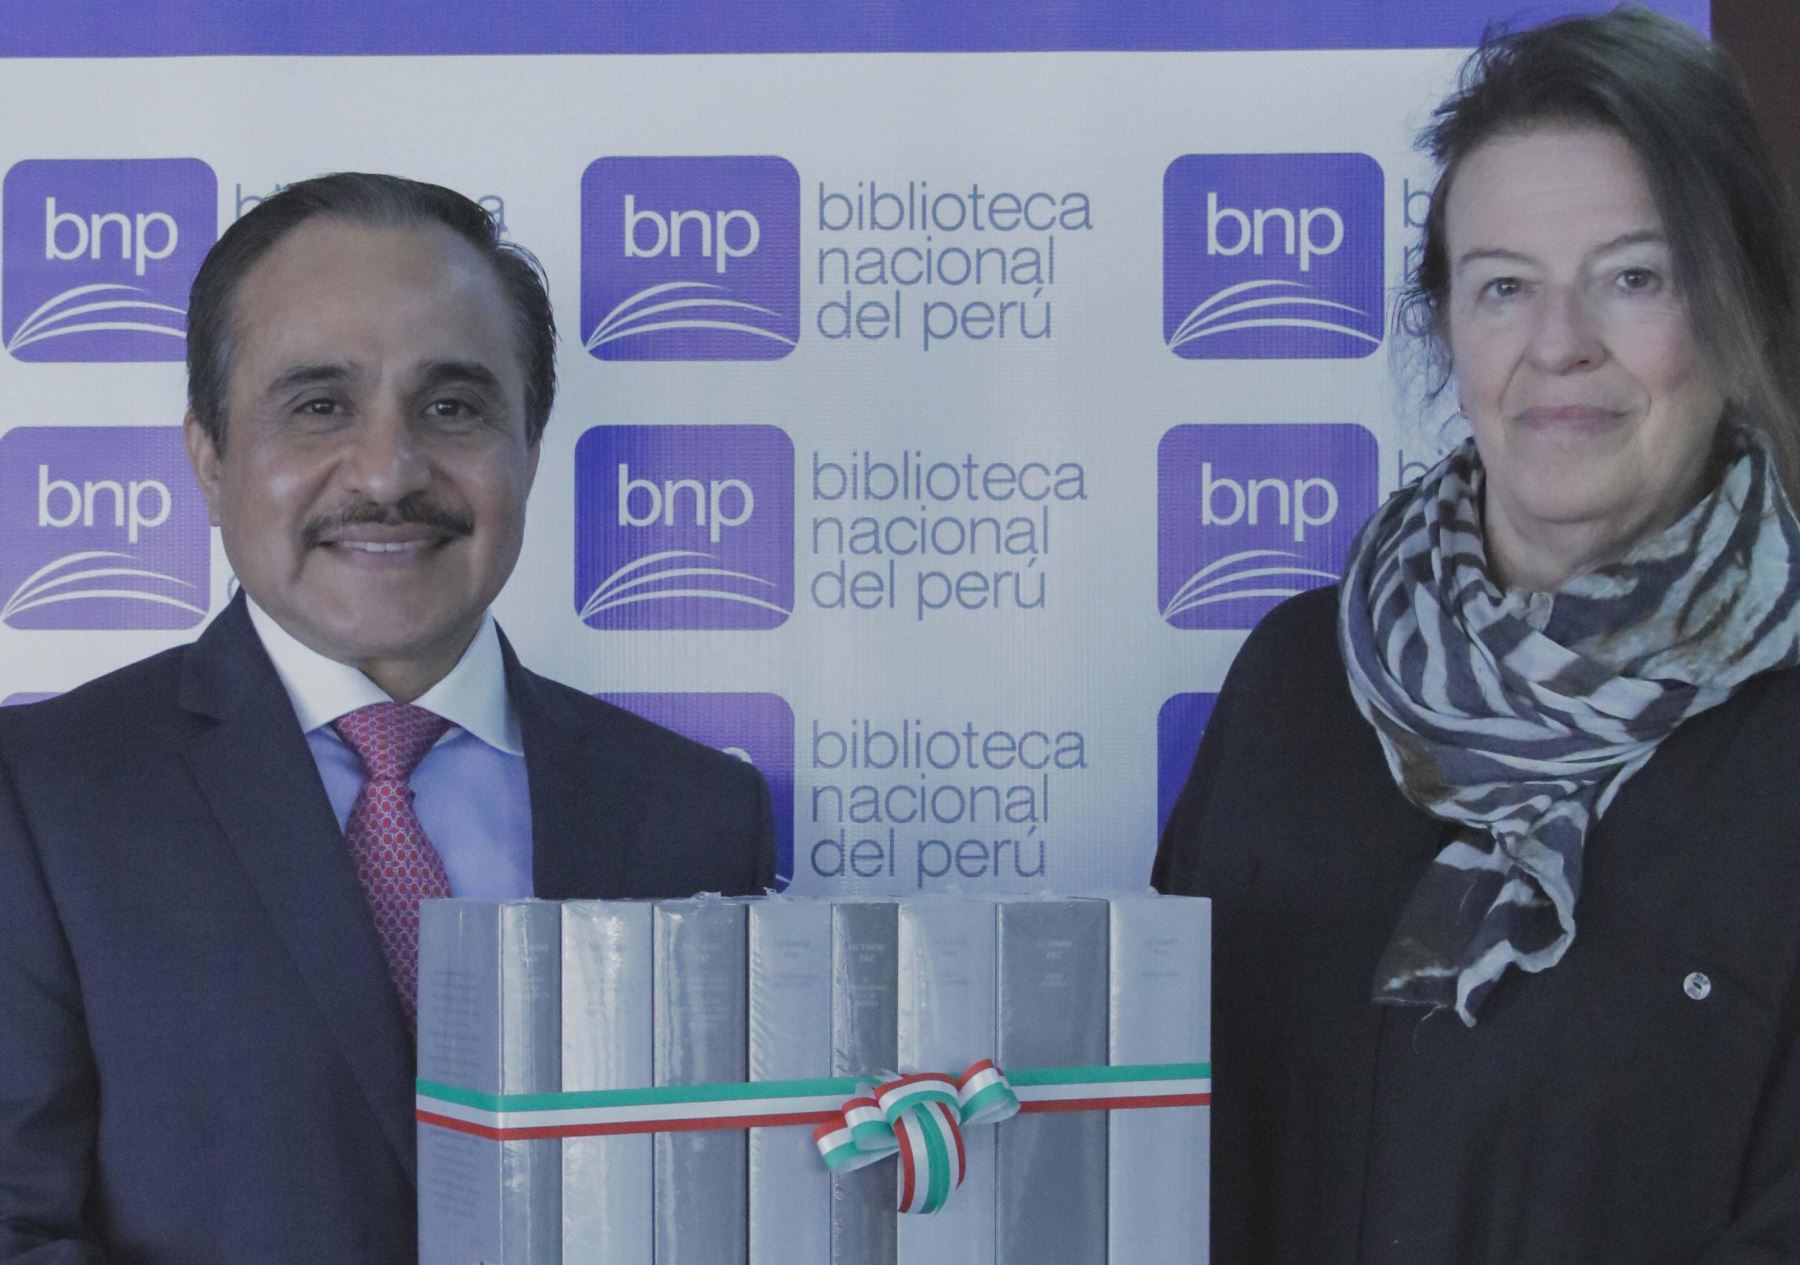 El embajador de México en el Perú, Víctor Hugo Morales Meléndez, hizo entrega de libros de colección del autor mexicano Octavio Paz a la Biblioteca Nacional del Perú.